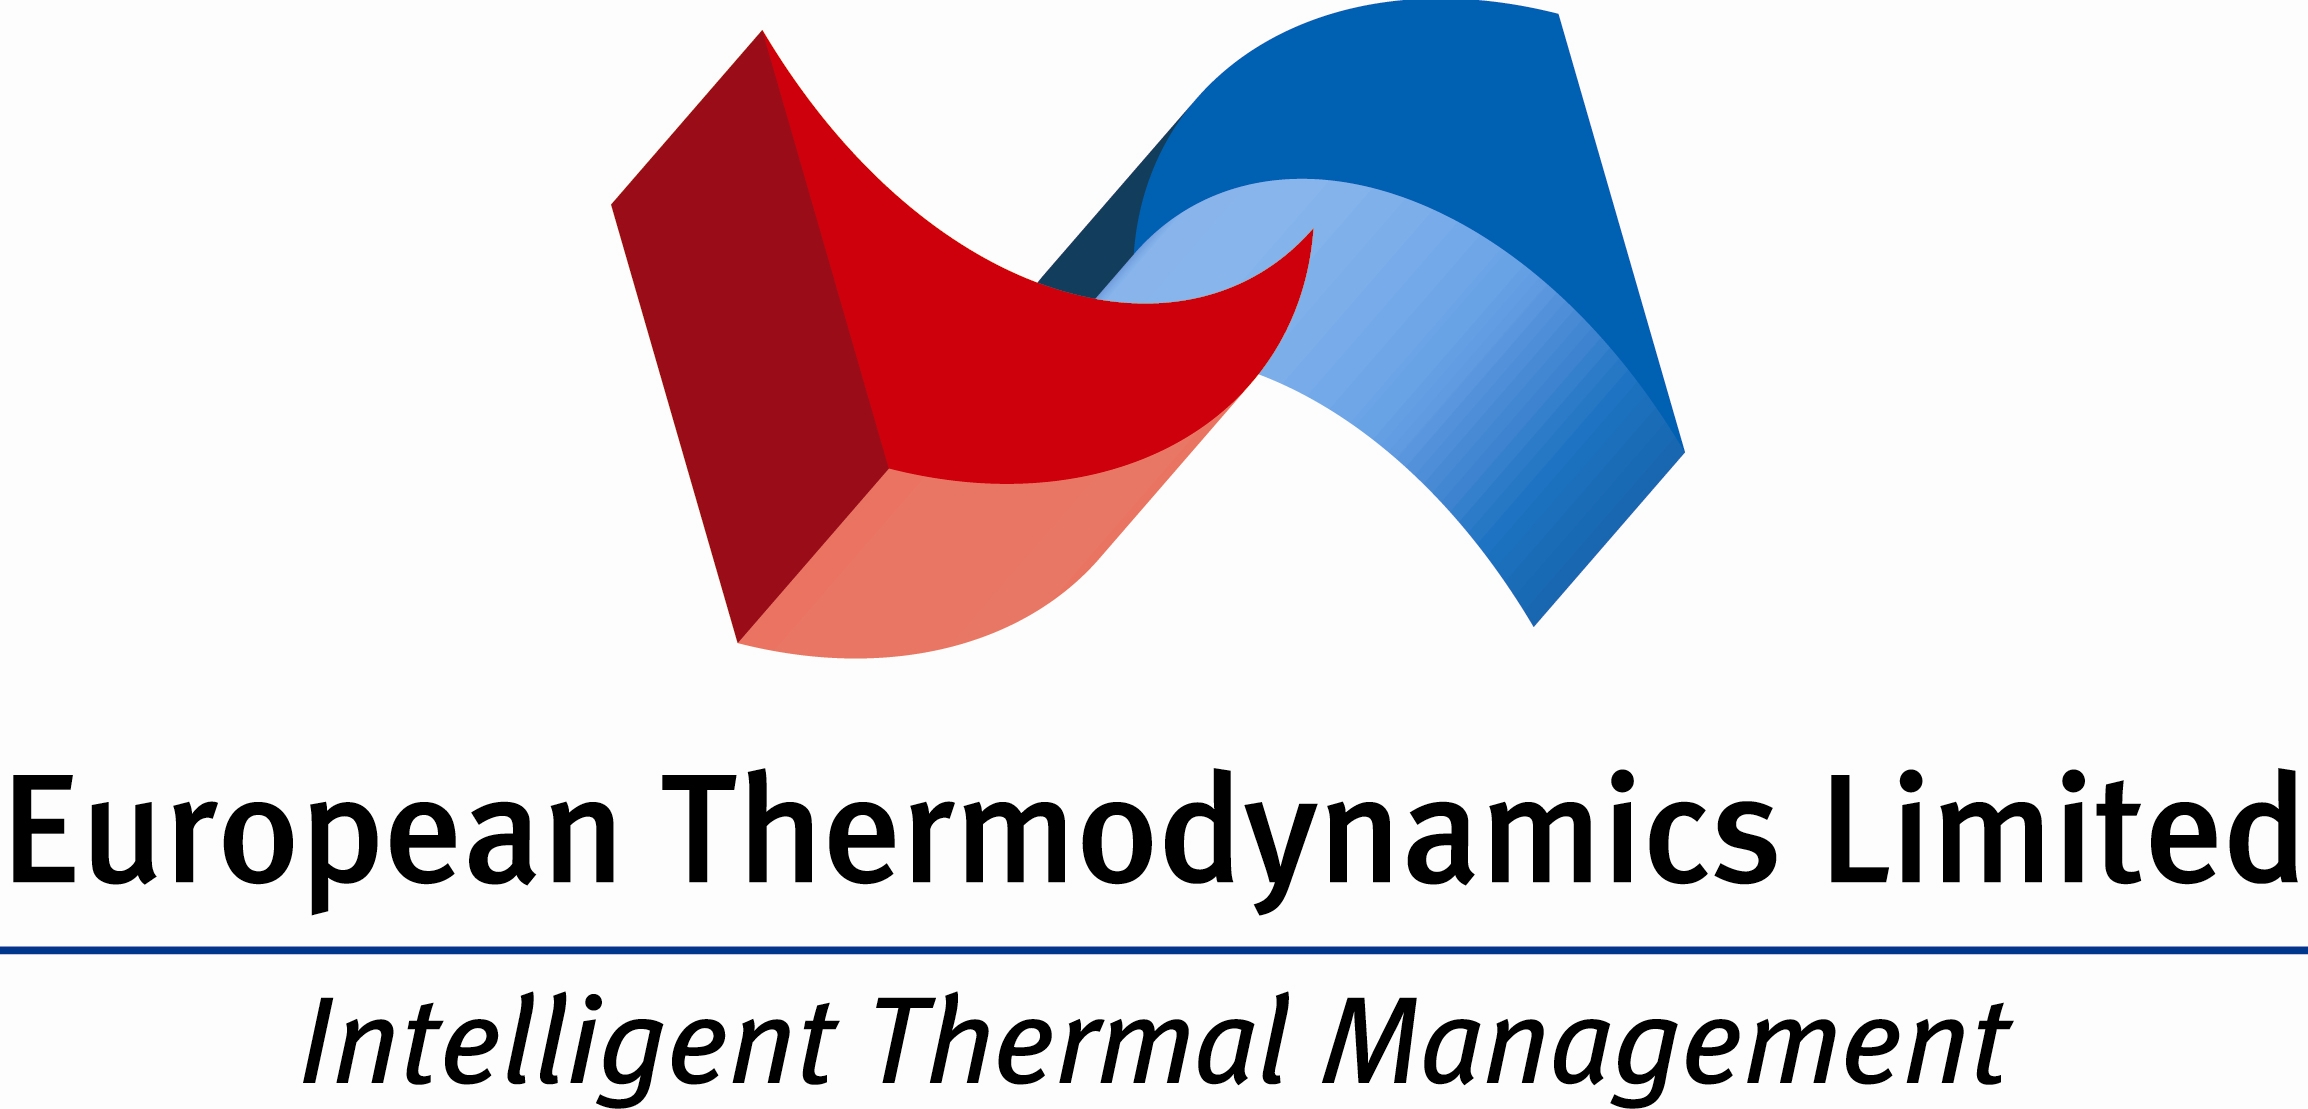 European Thermodynamics